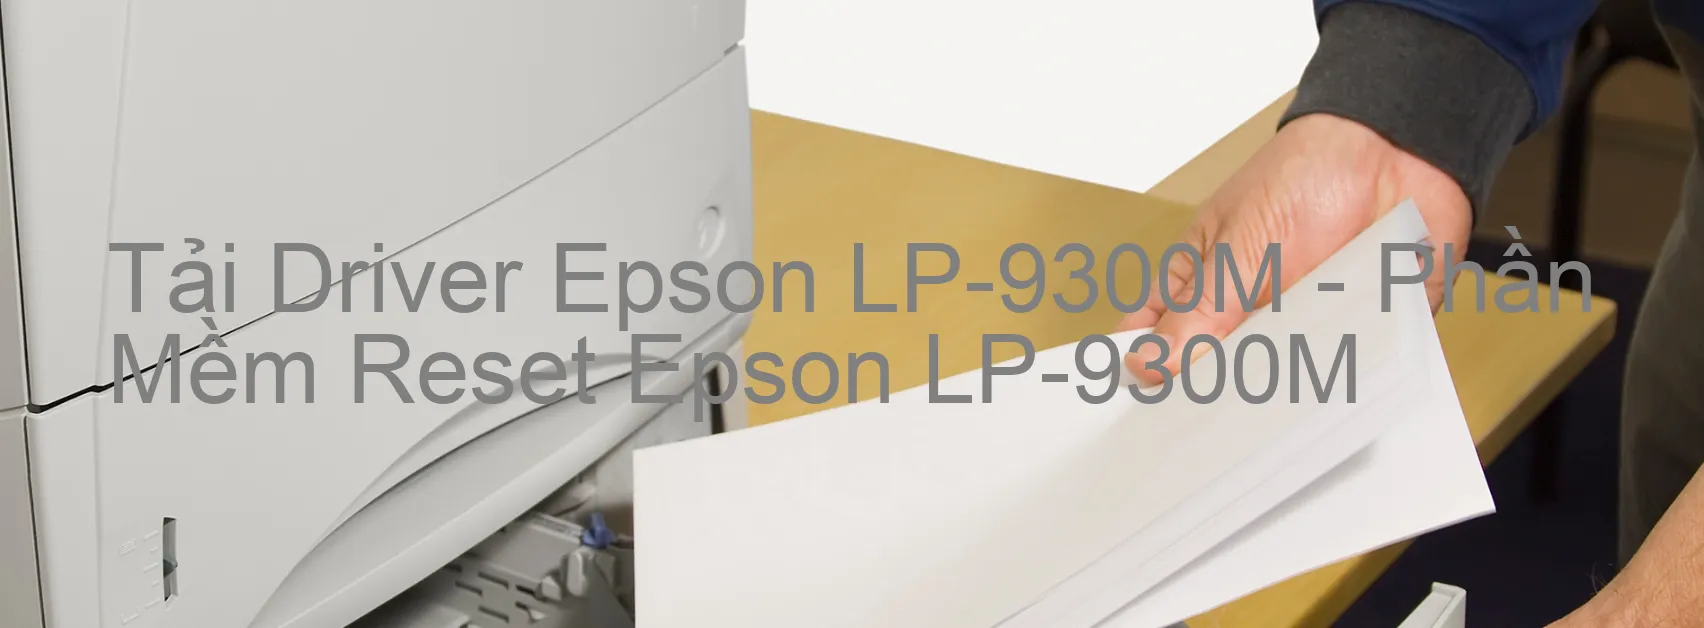 Driver Epson LP-9300M, Phần Mềm Reset Epson LP-9300M